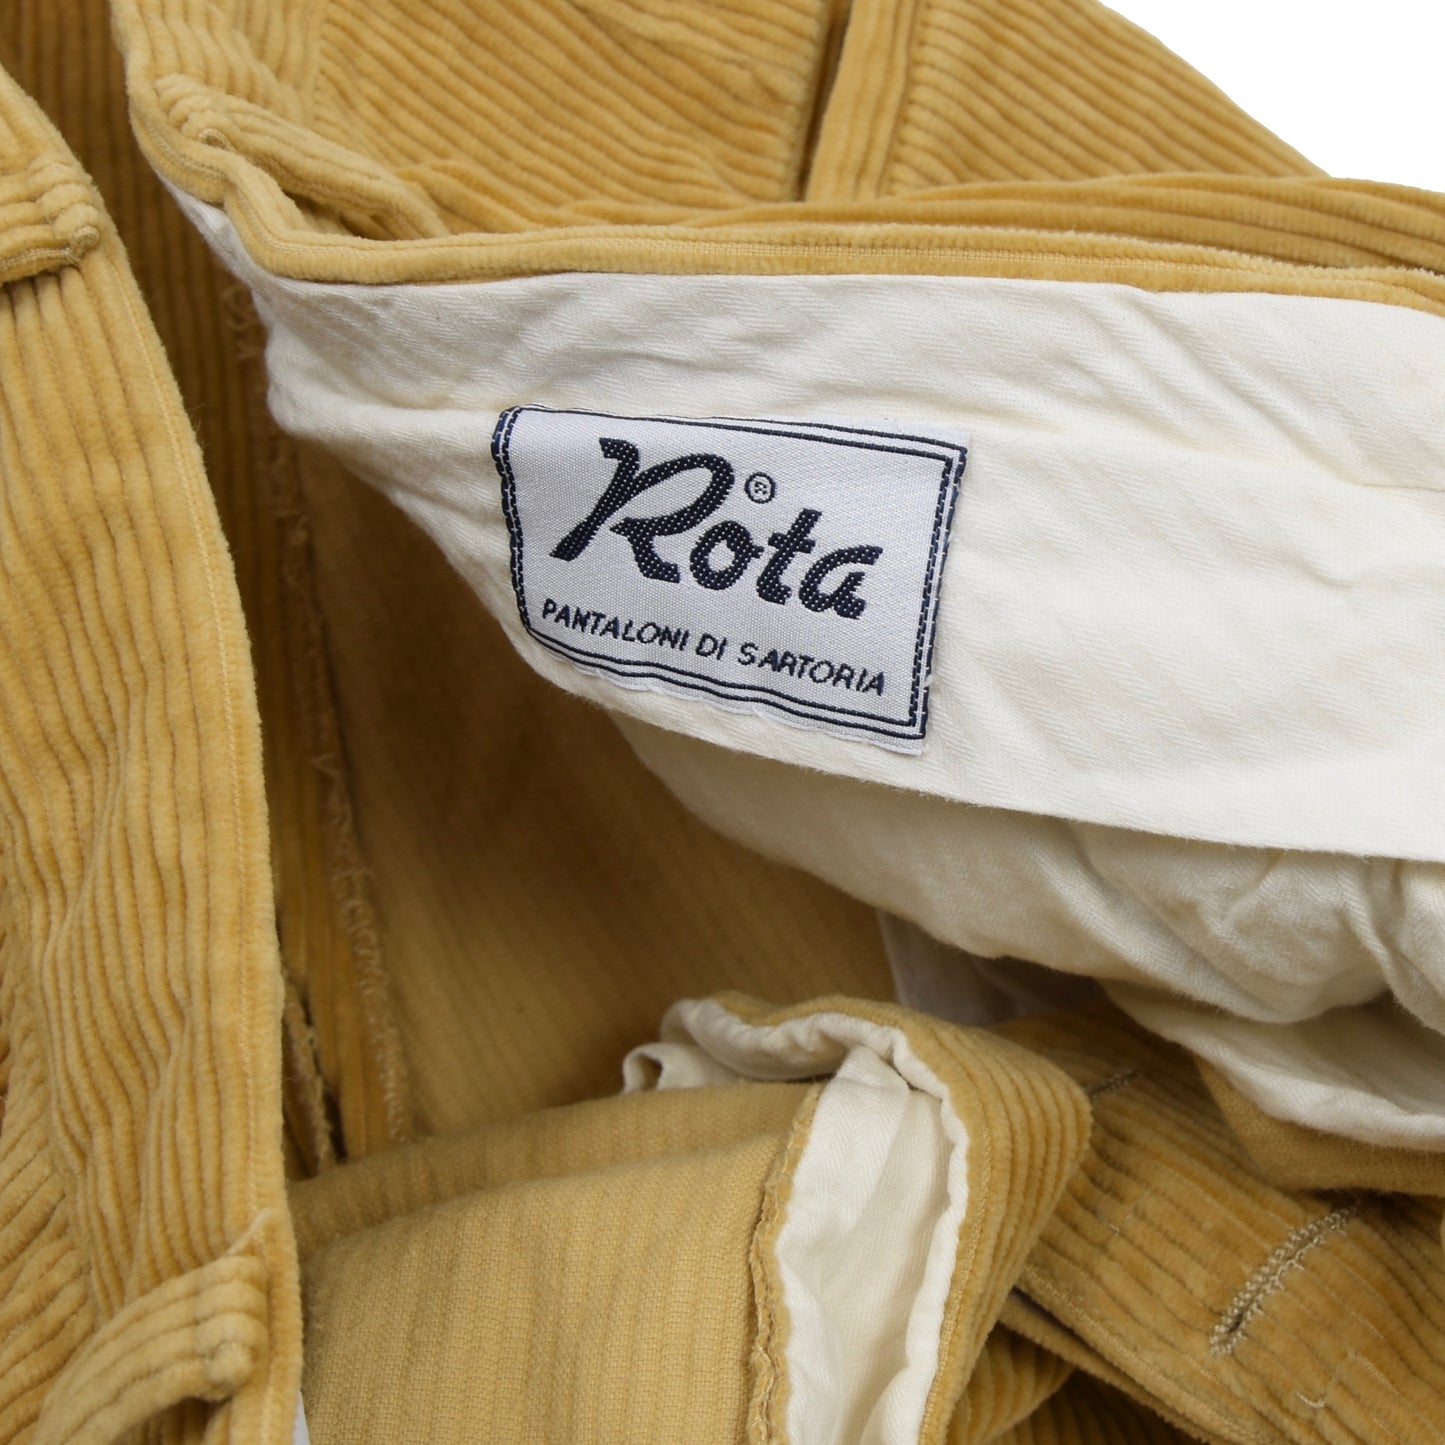 Rota Sport Corduroy Cotton Pants Size 52 - Tan